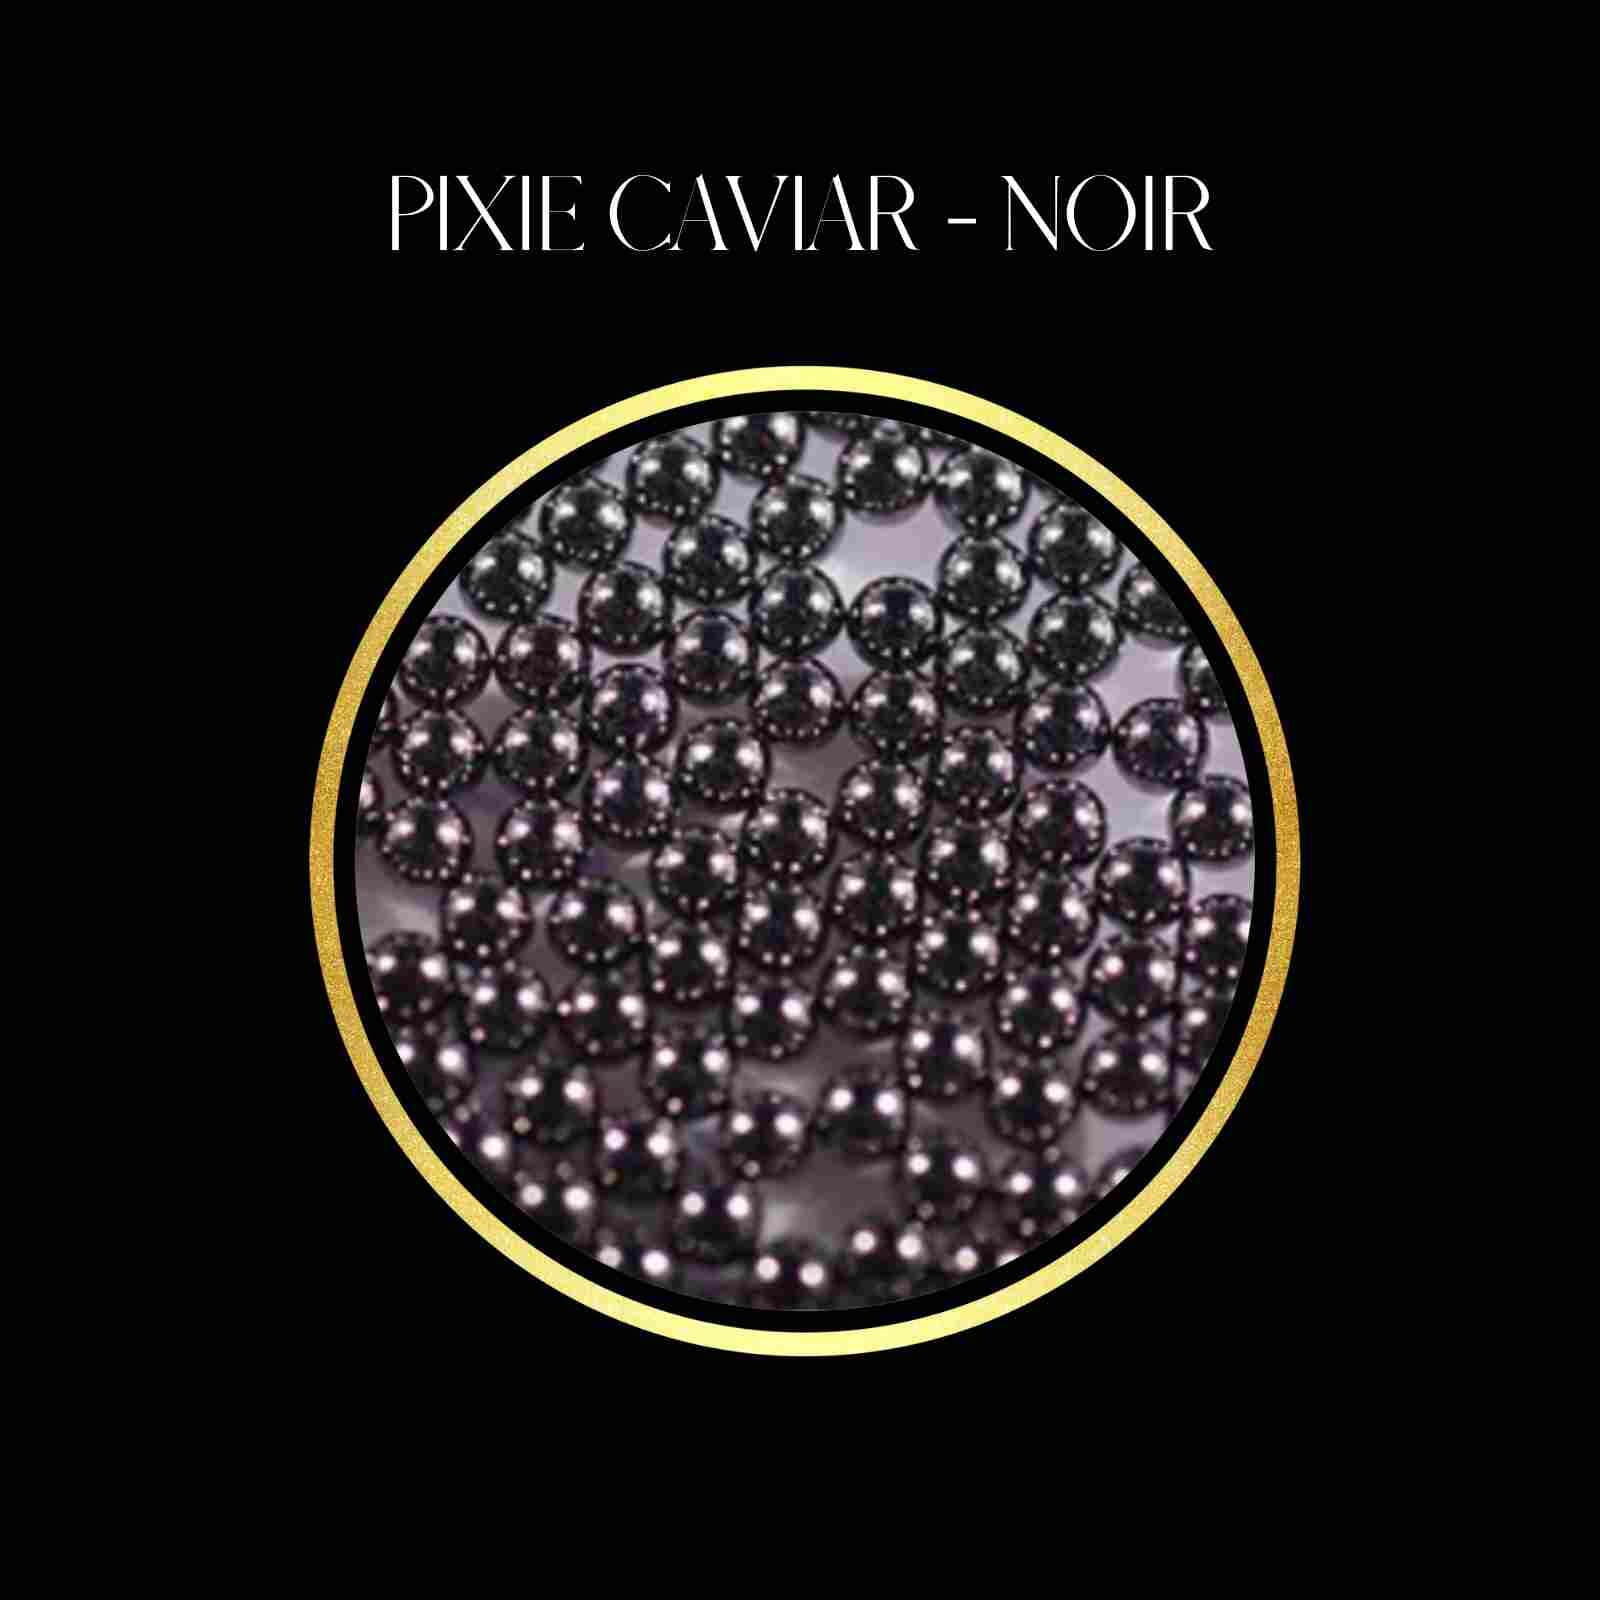 Fairy Dust - Pixie Caviar